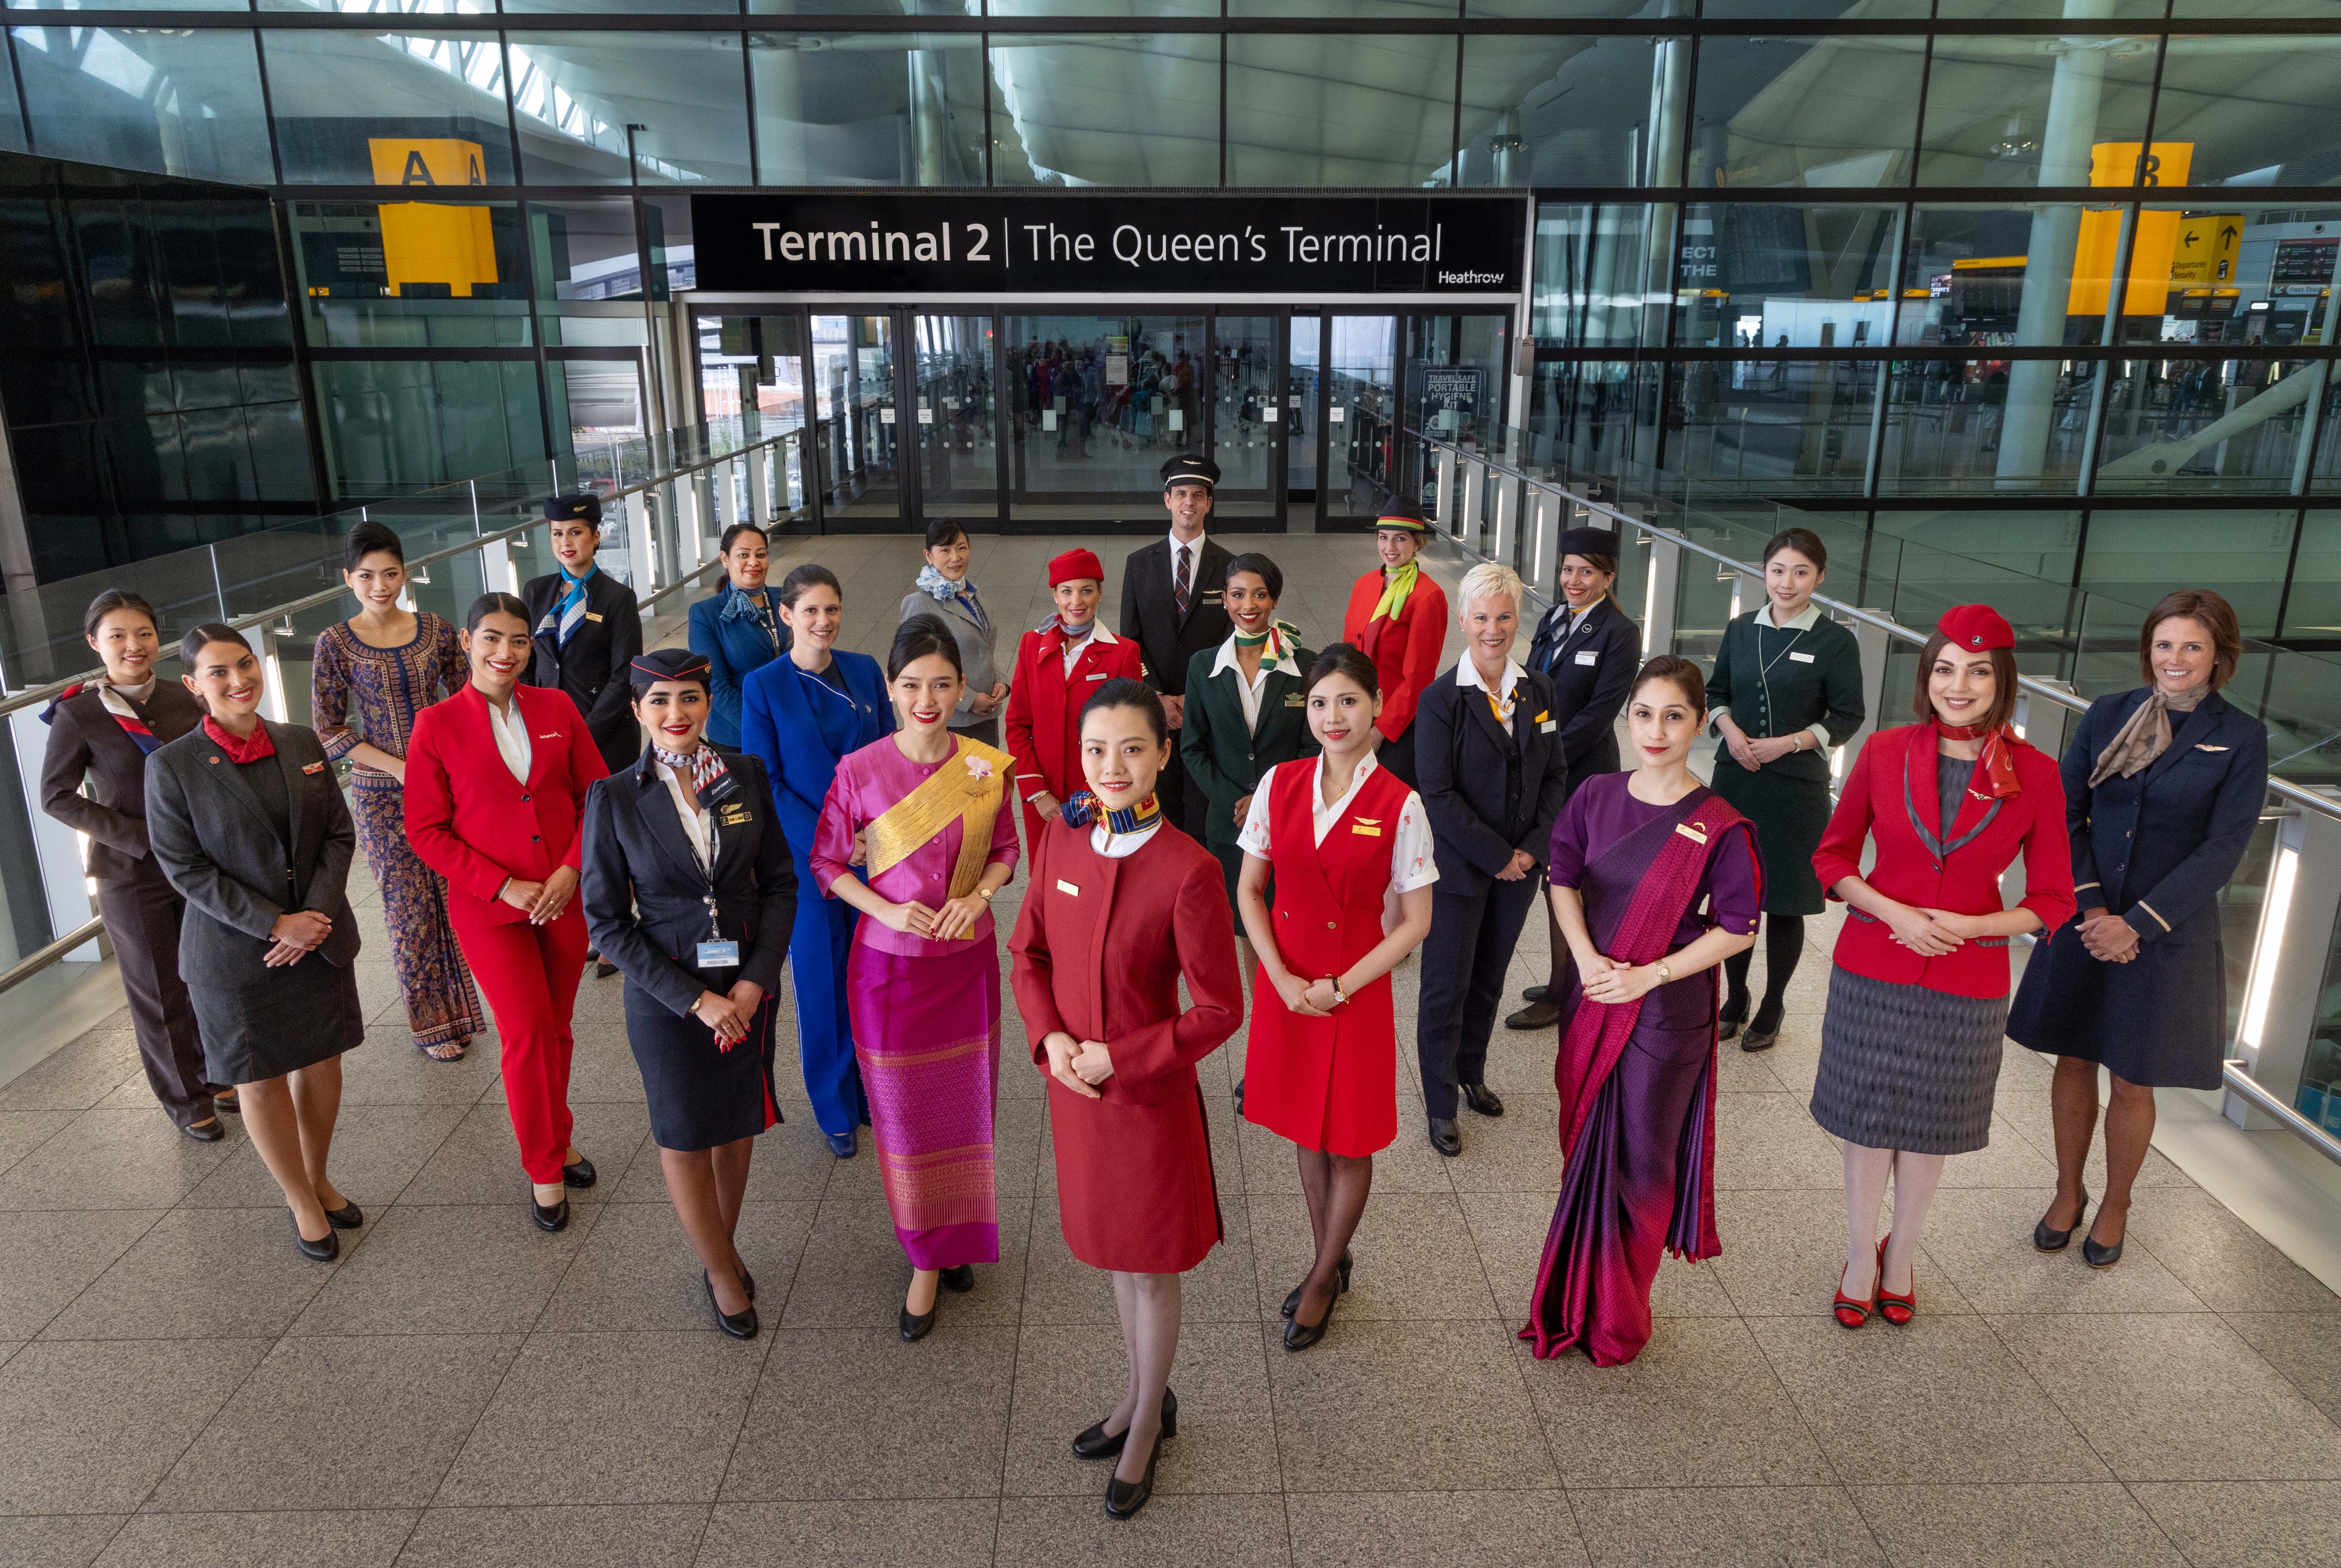 Η Star Alliance γιορτάζει 10 χρόνια παρουσίας στο Terminal 2 του Heathrow